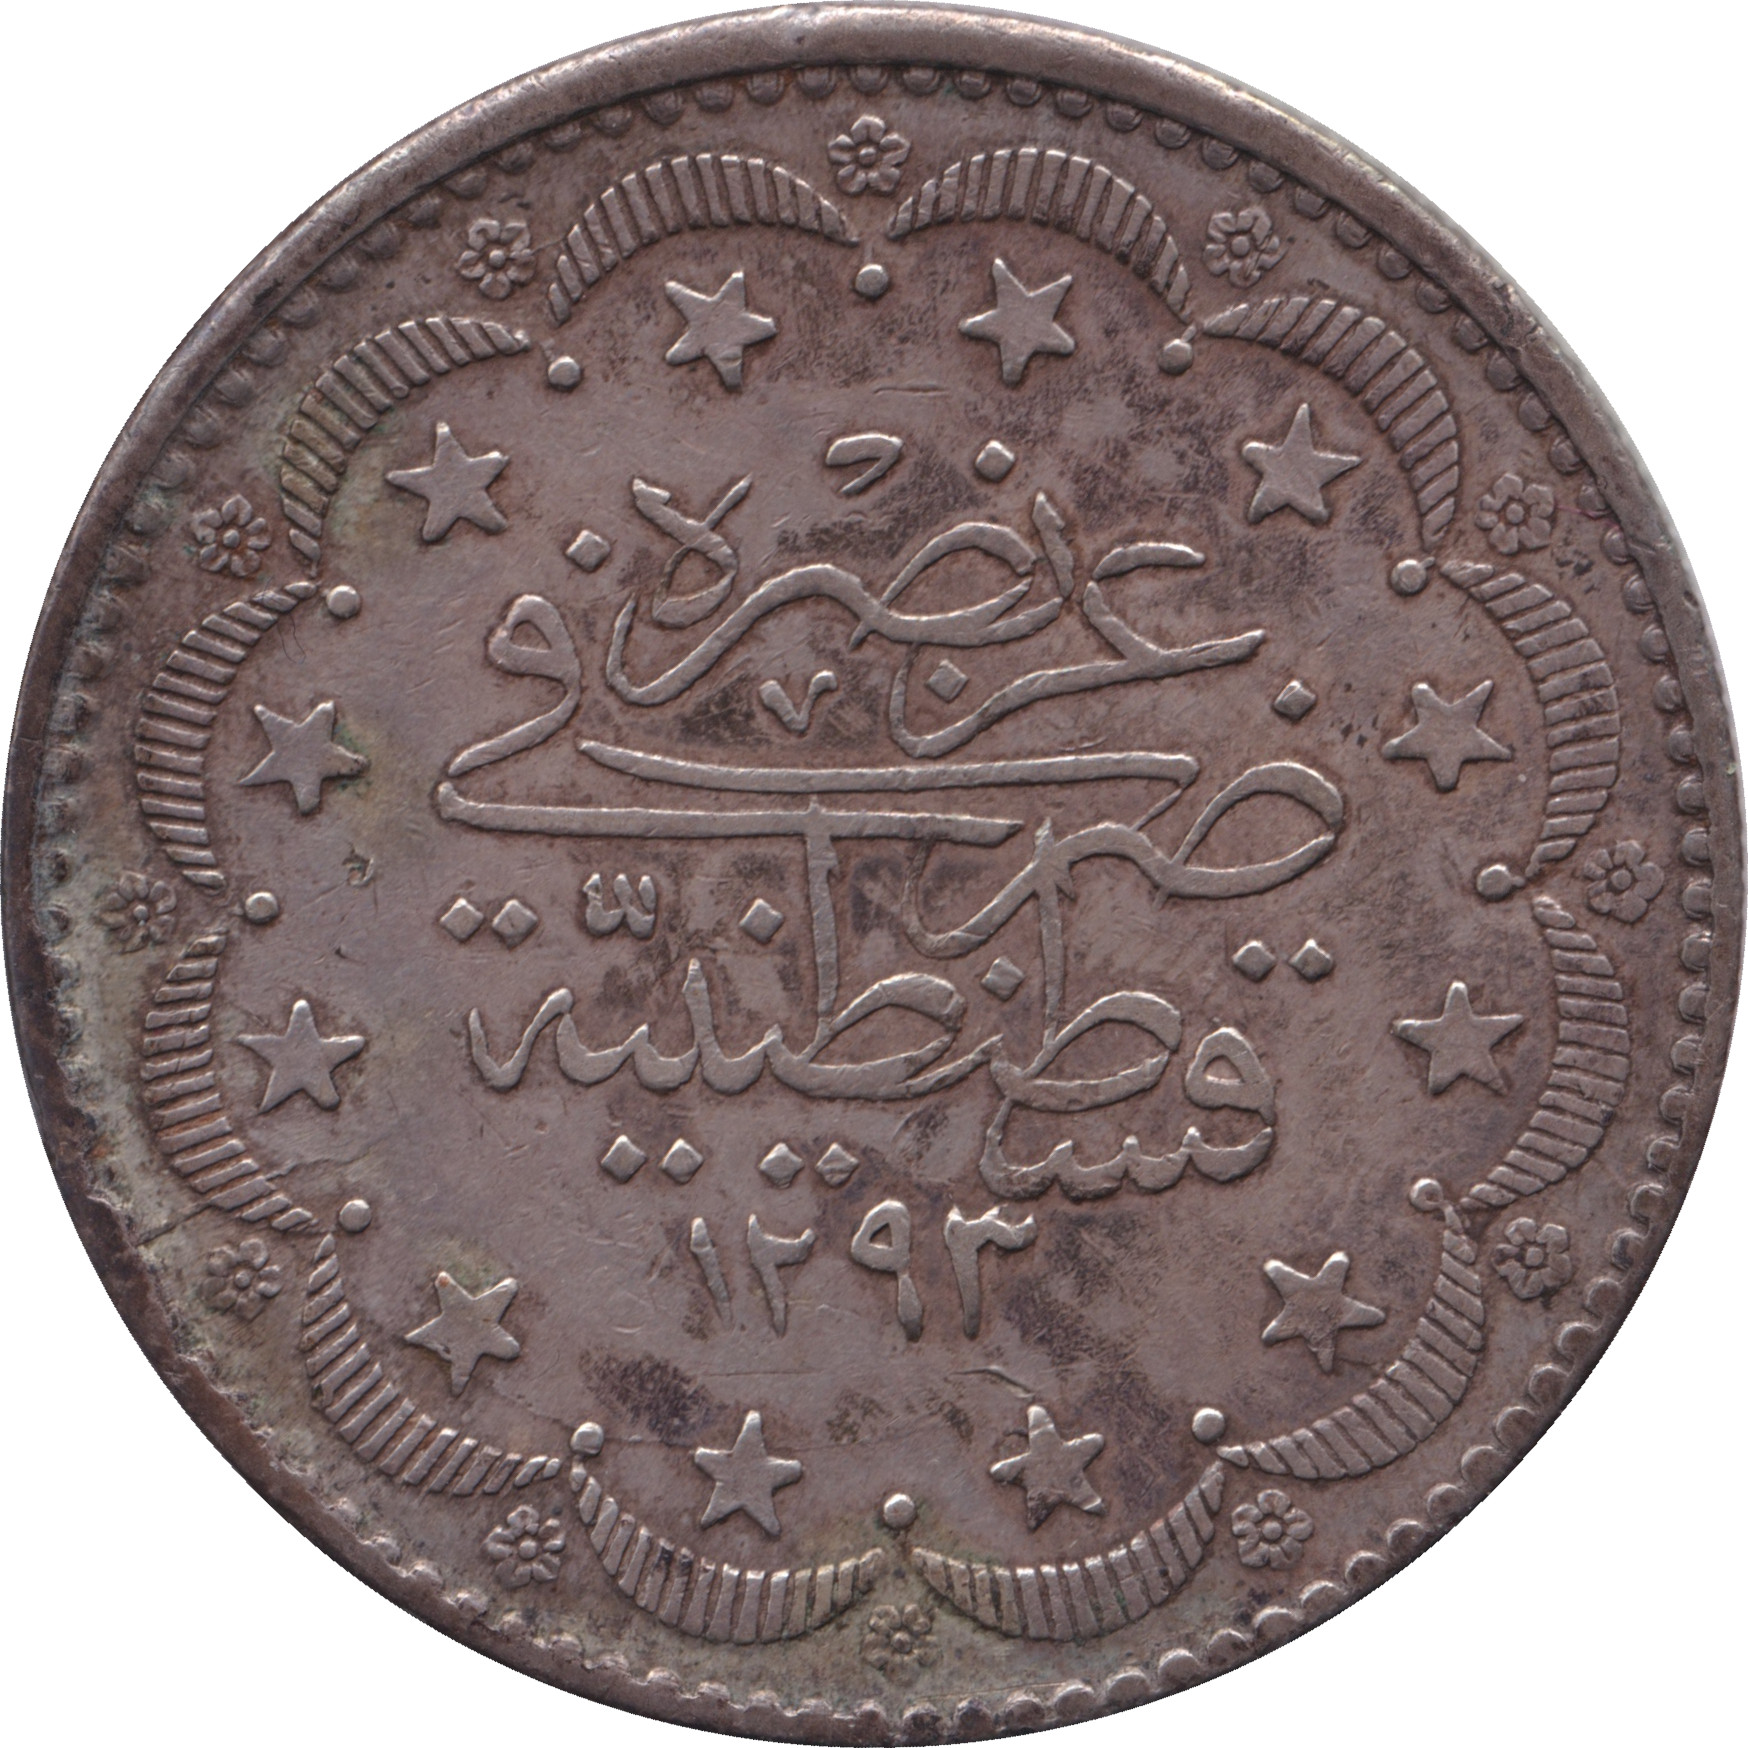 5 qirsh - Abdul Hamid II